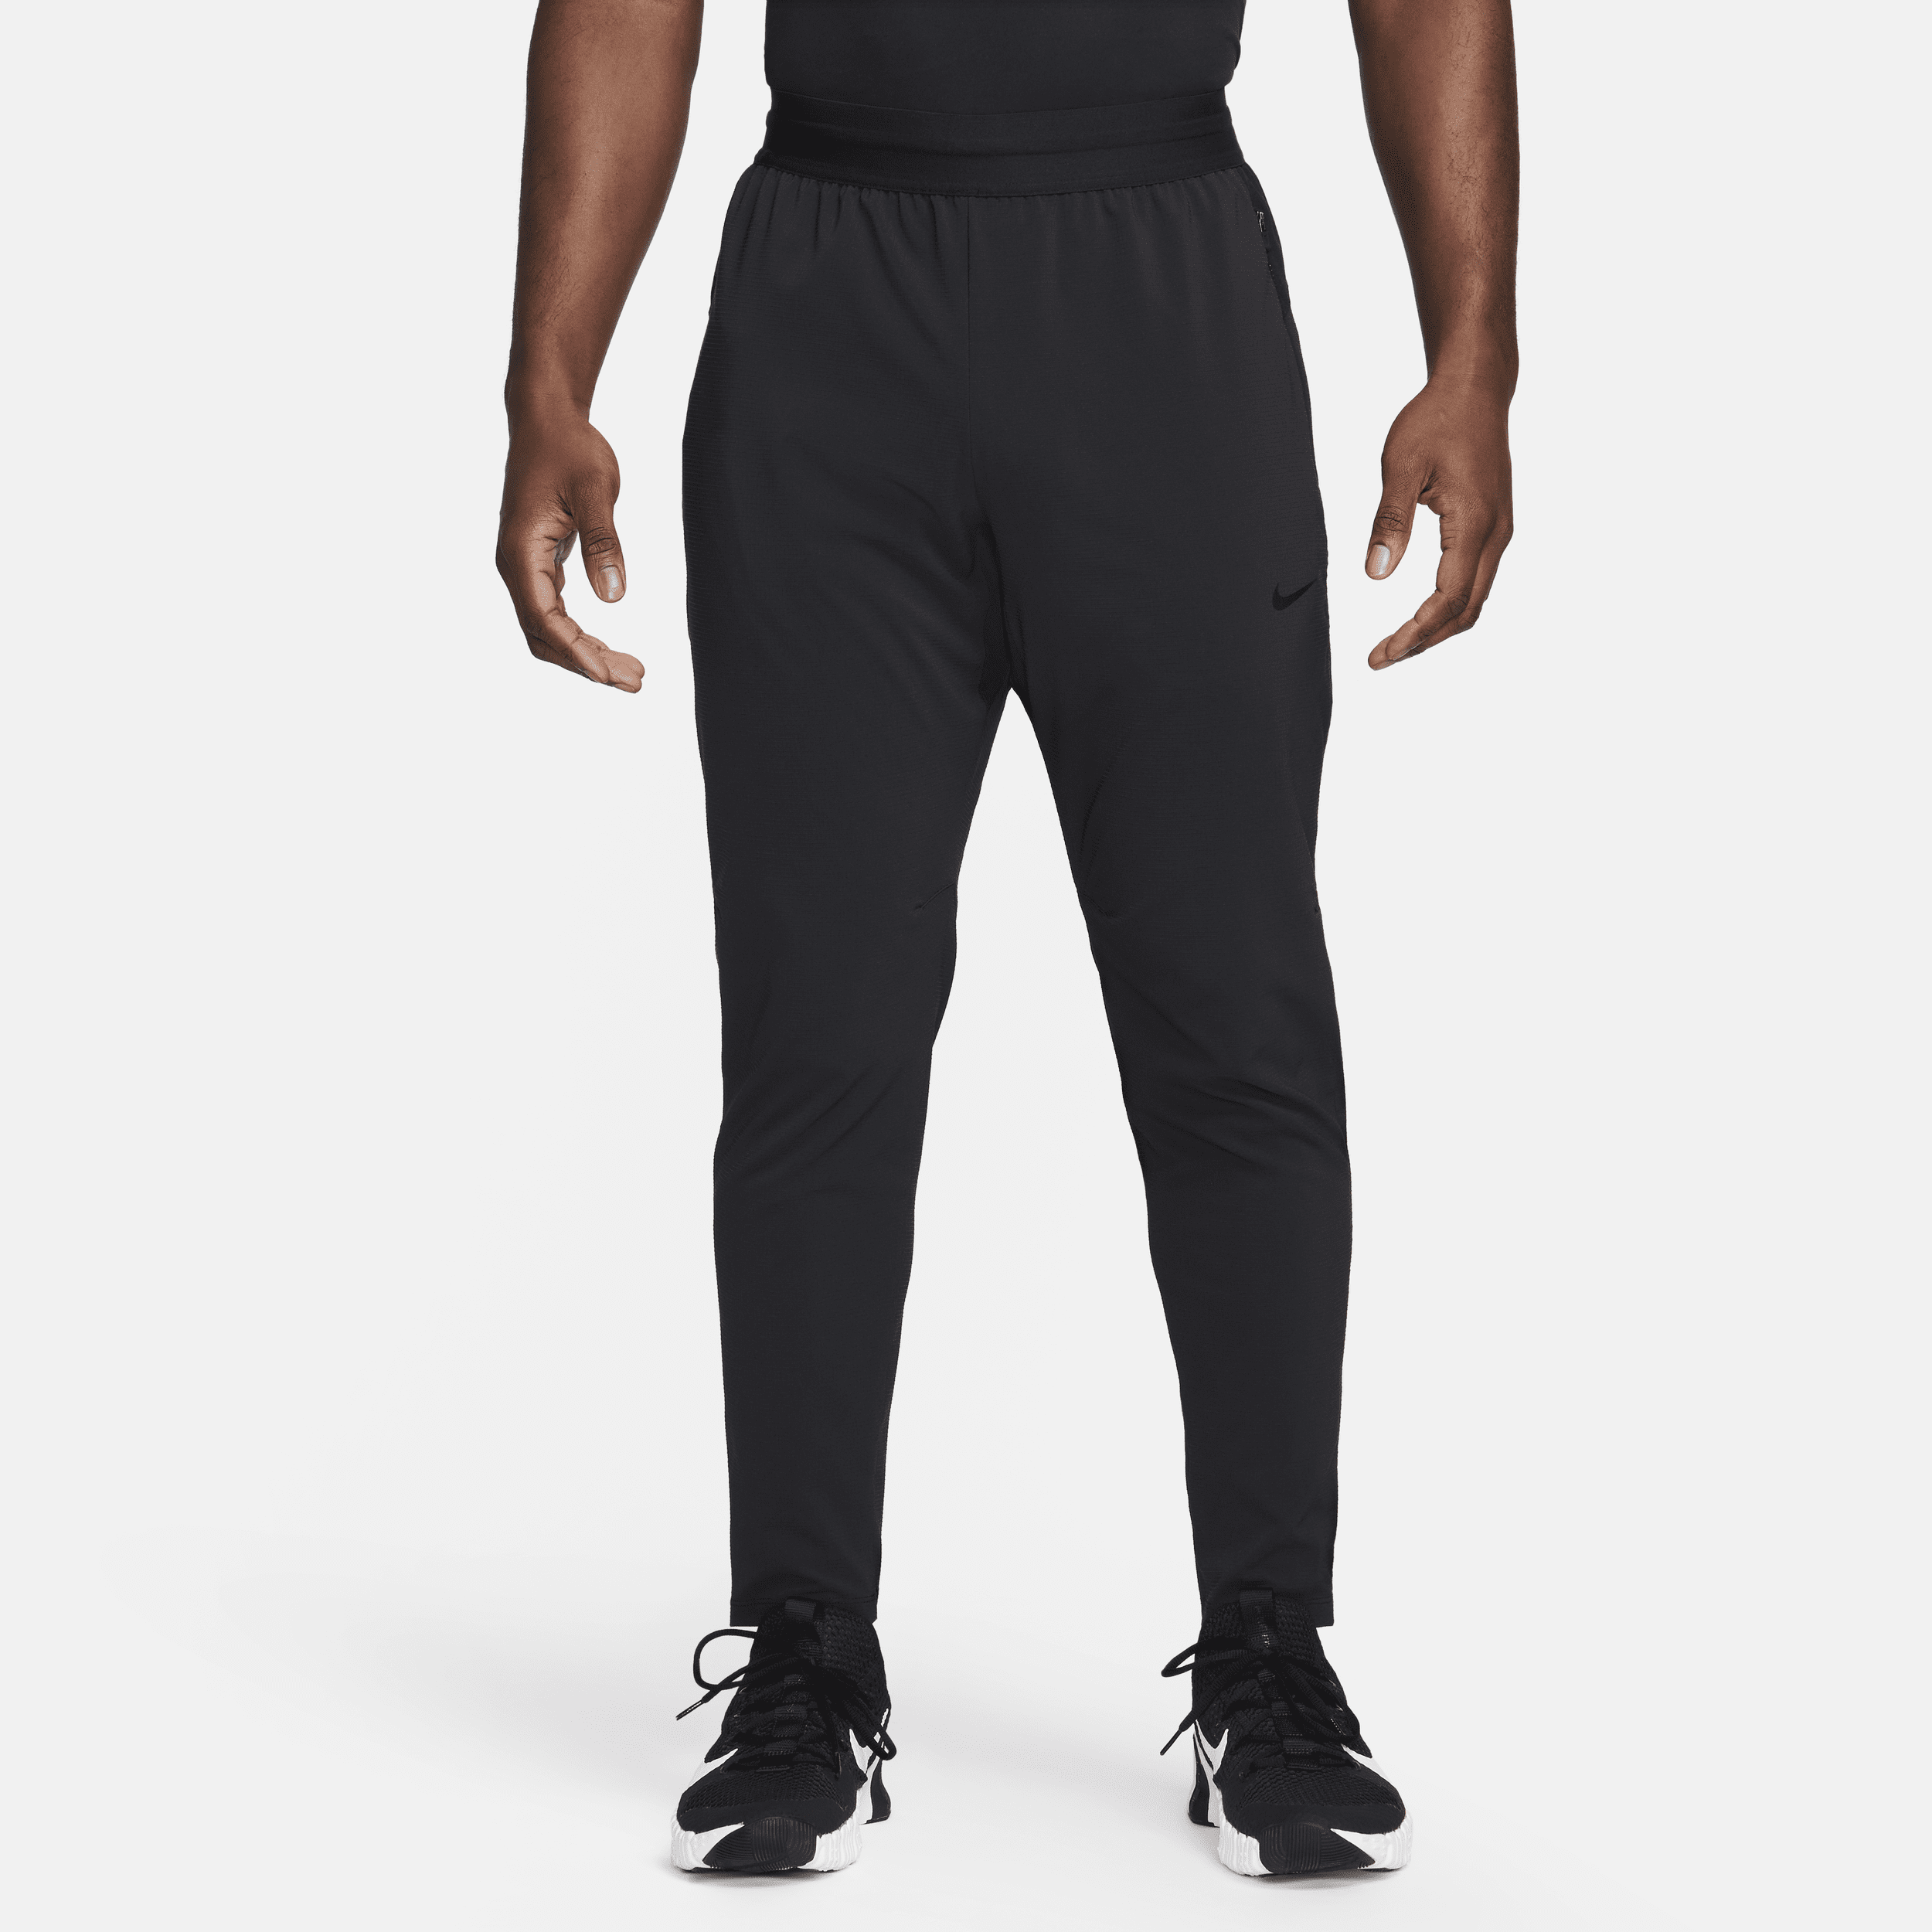 Pantaloni da fitness Dri-FIT Nike Flex Rep – Uomo - Nero